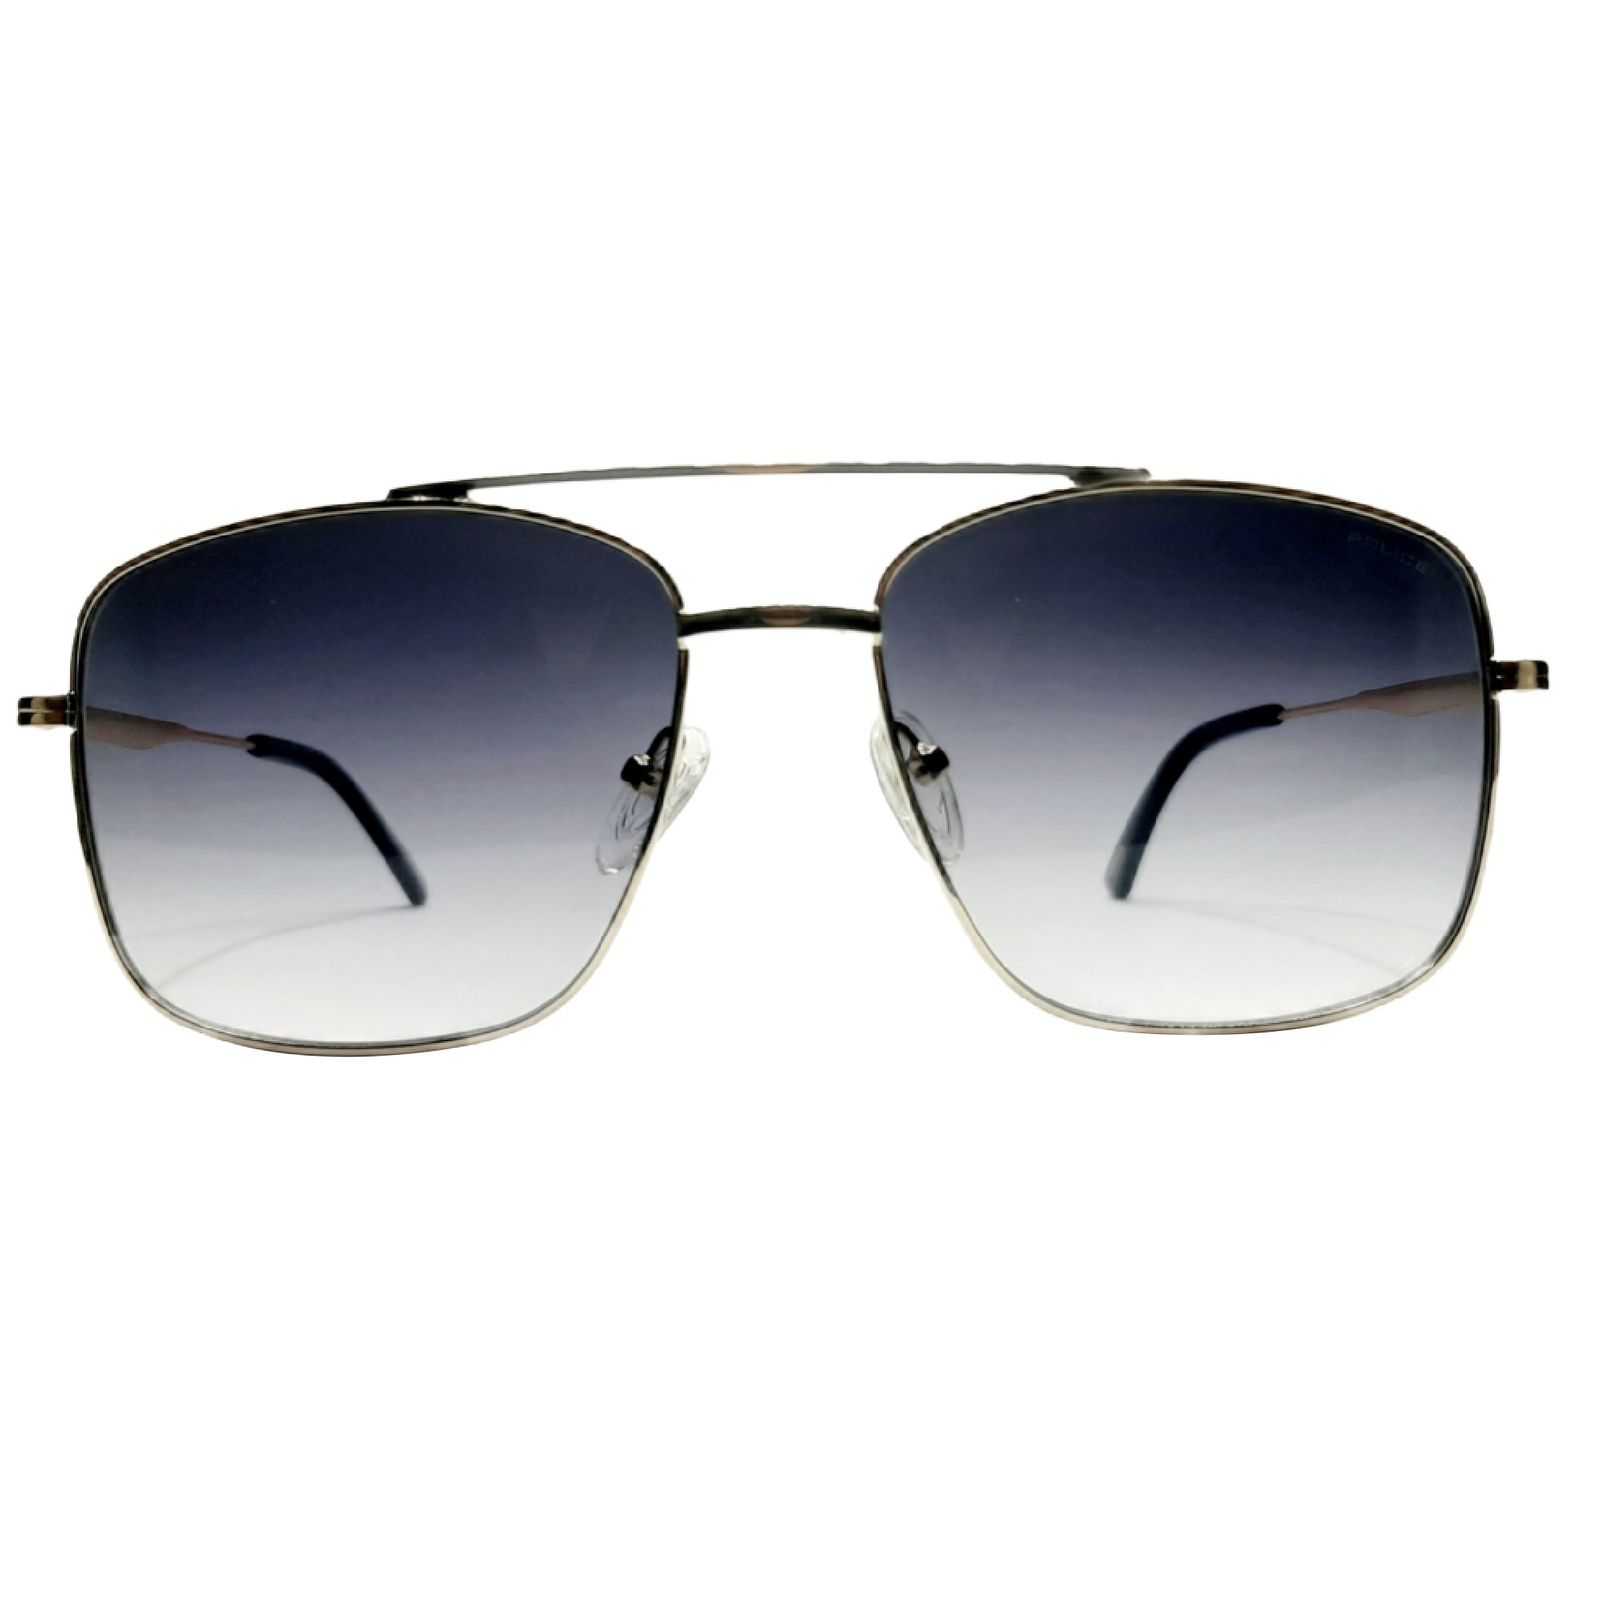 عینک آفتابی پلیس مدل SPL601c1 -  - 1